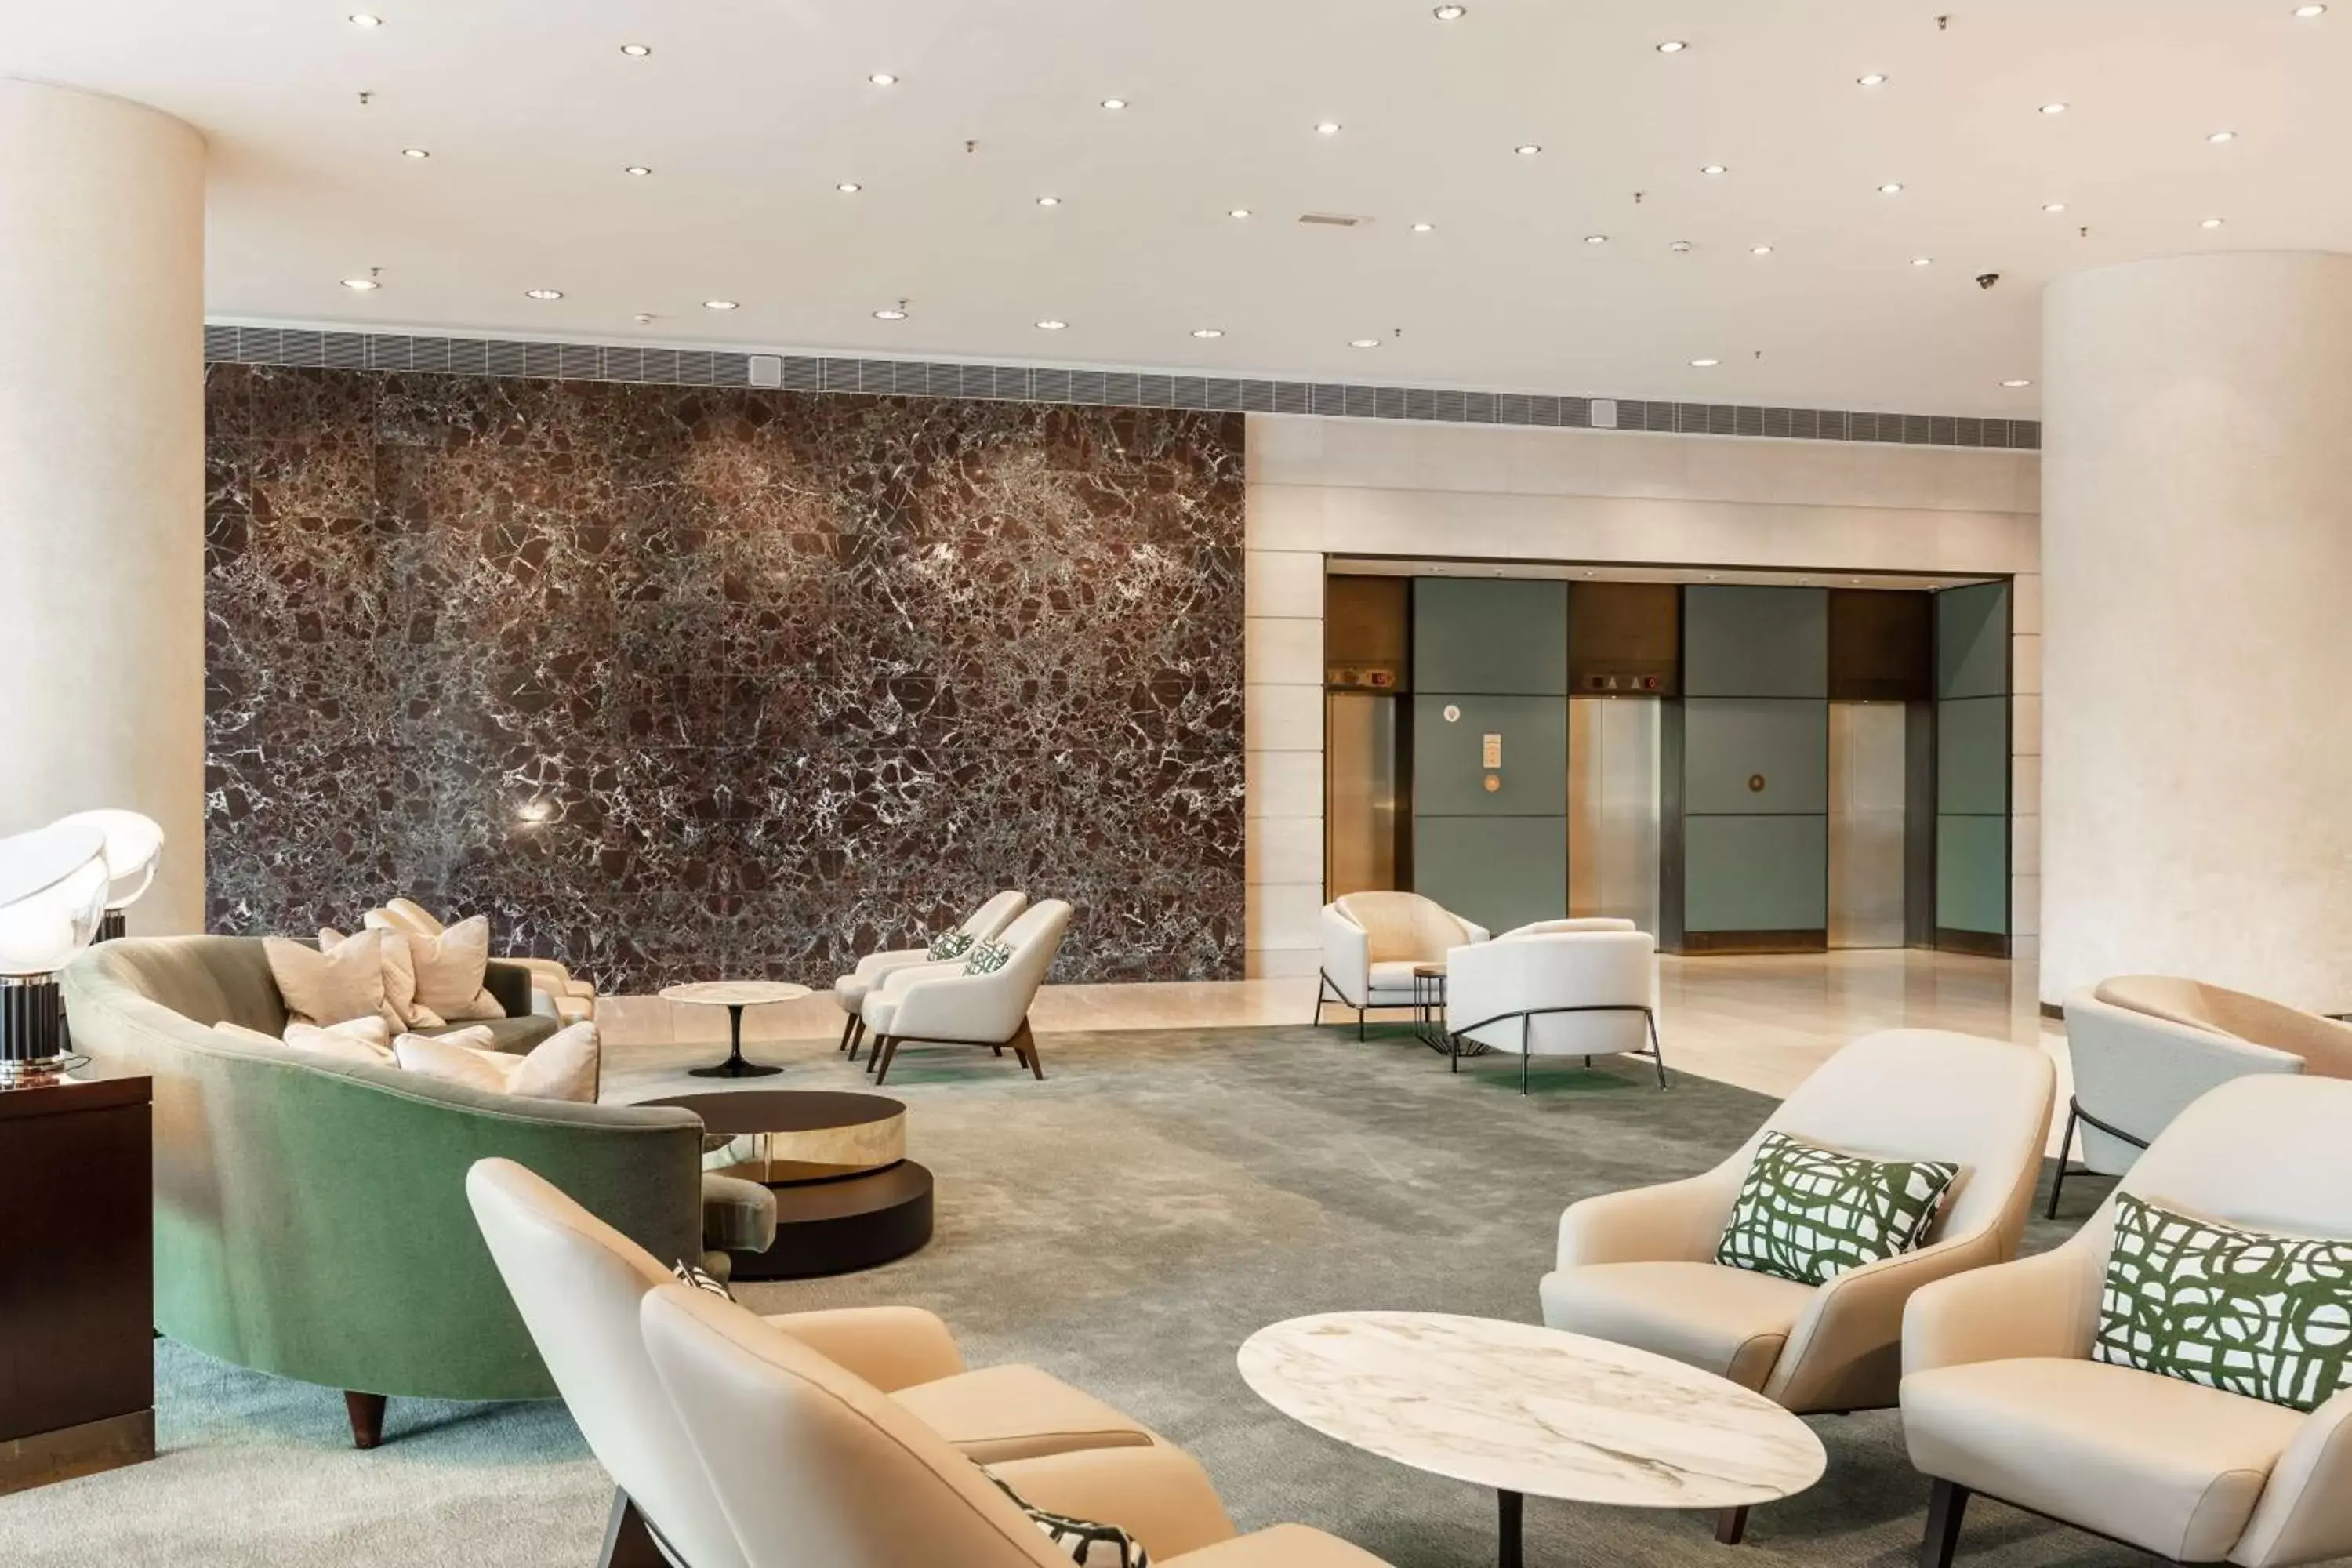 Lobby or reception in Hilton Amsterdam